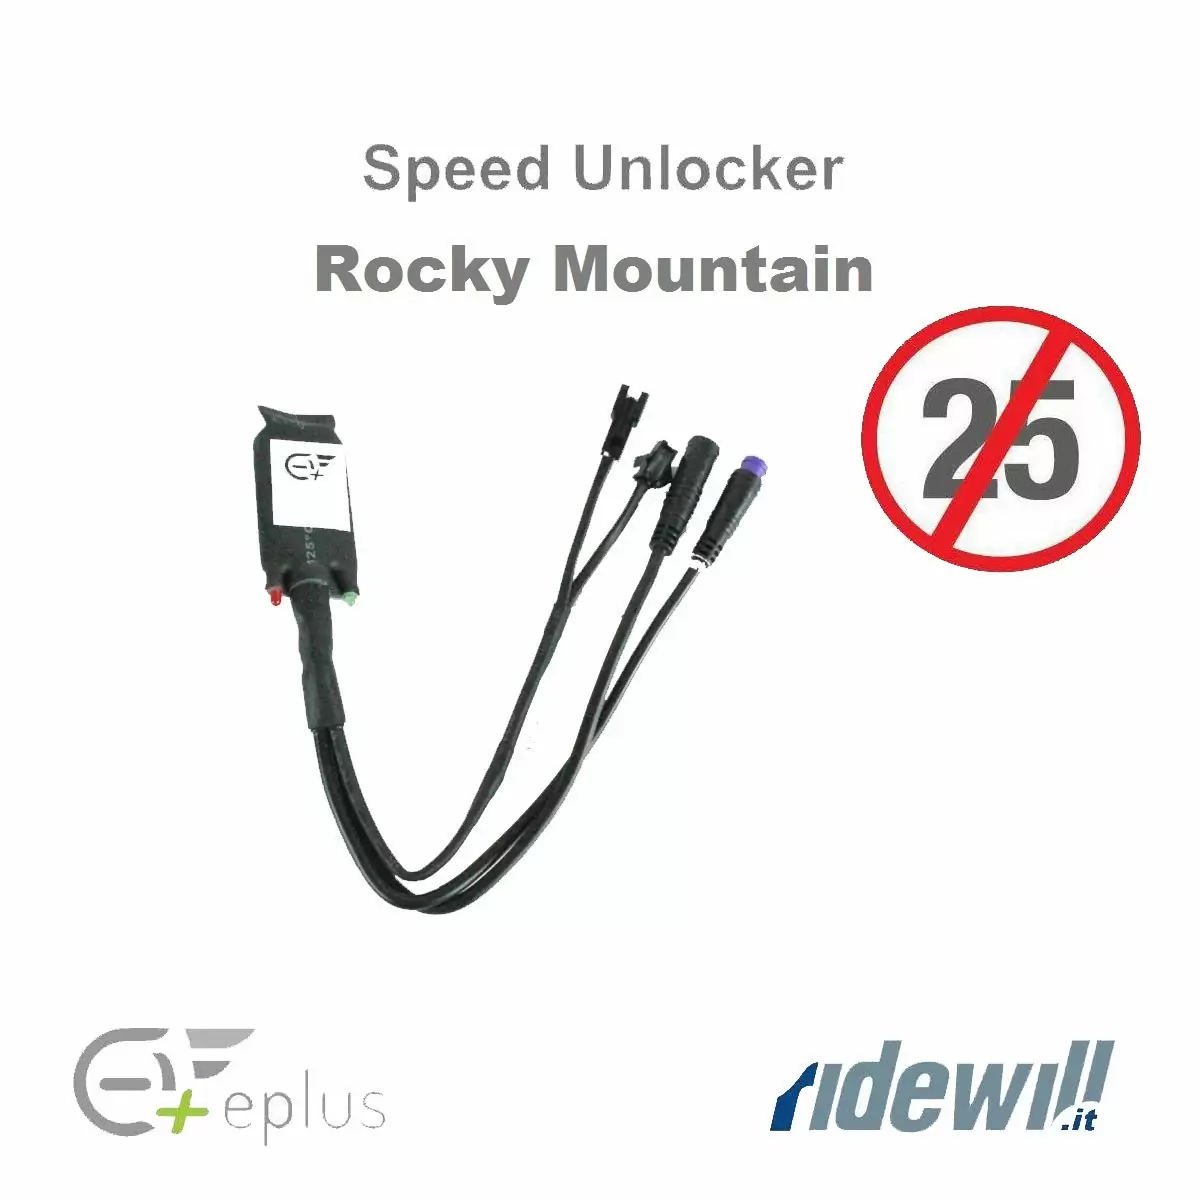 Kit sblocco Racing Speed Unlocker lite modifica ebike Rocky Mountain #1